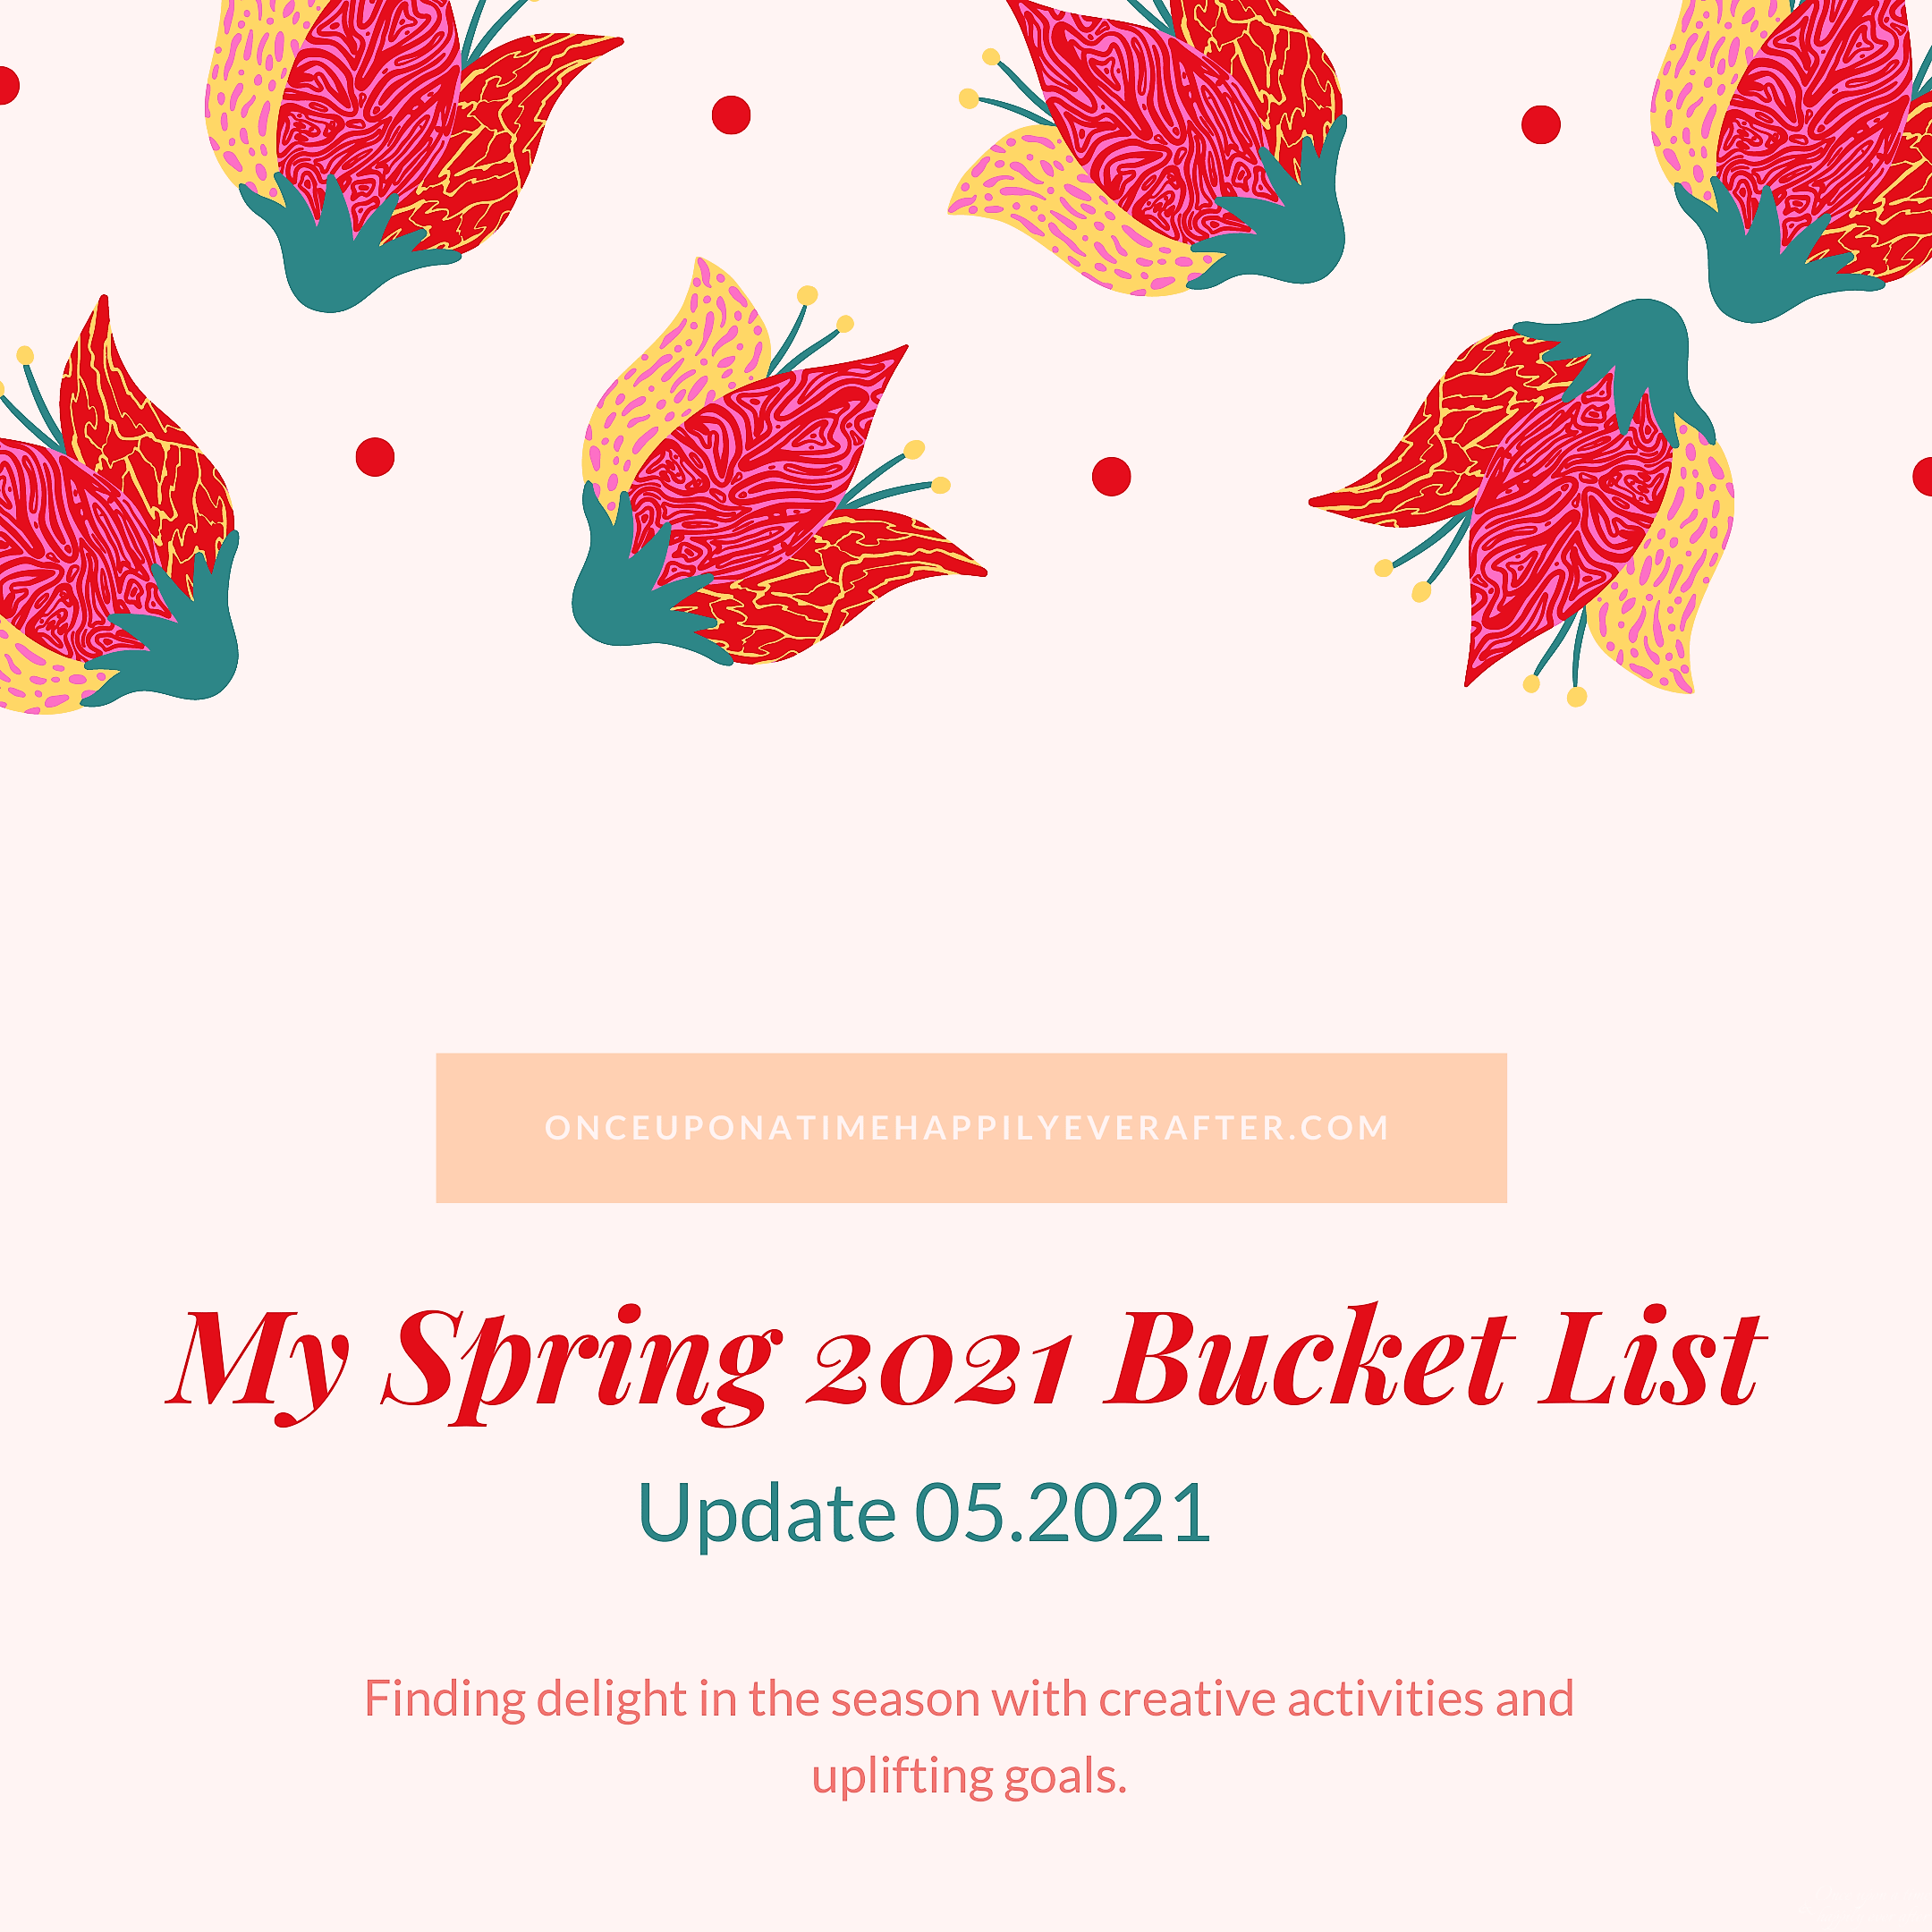 Update 05.21.2021: My Spring Bucket List